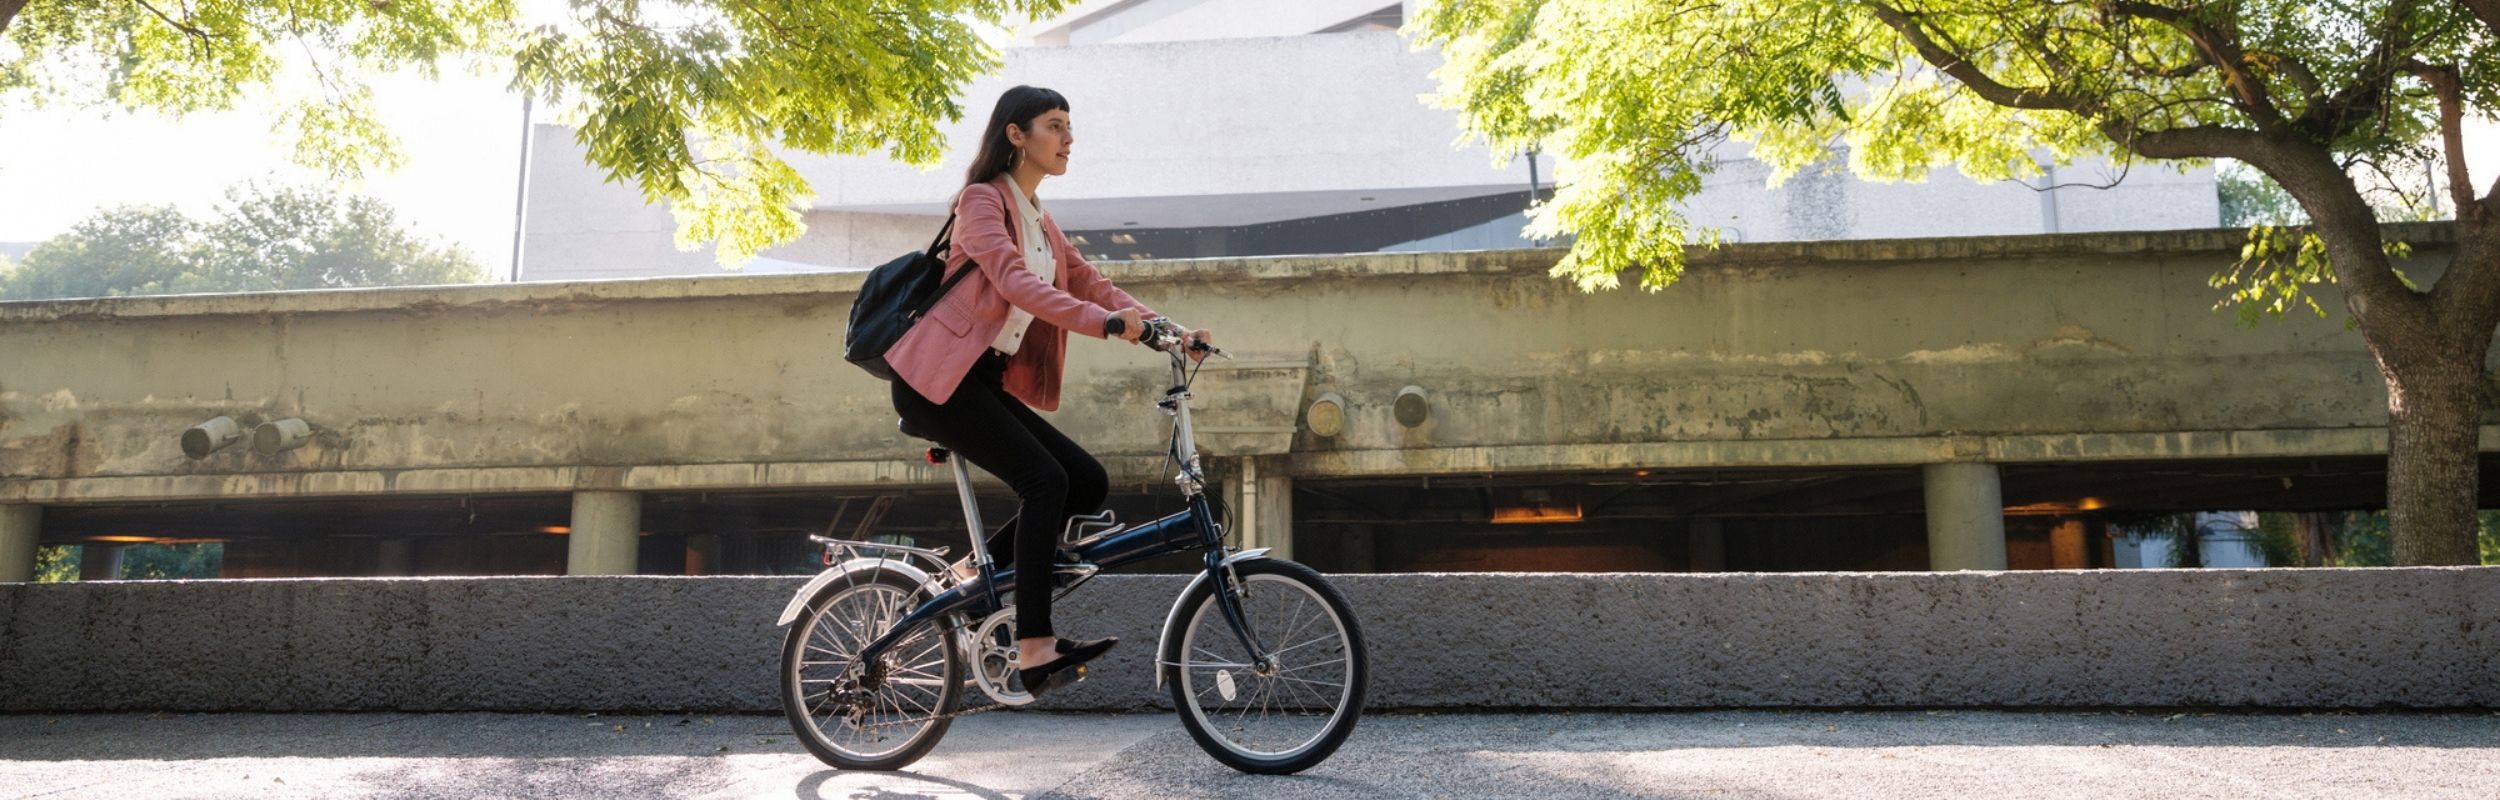 Femme sur un vélo montrant les bienfaits du forfait mobilités durables